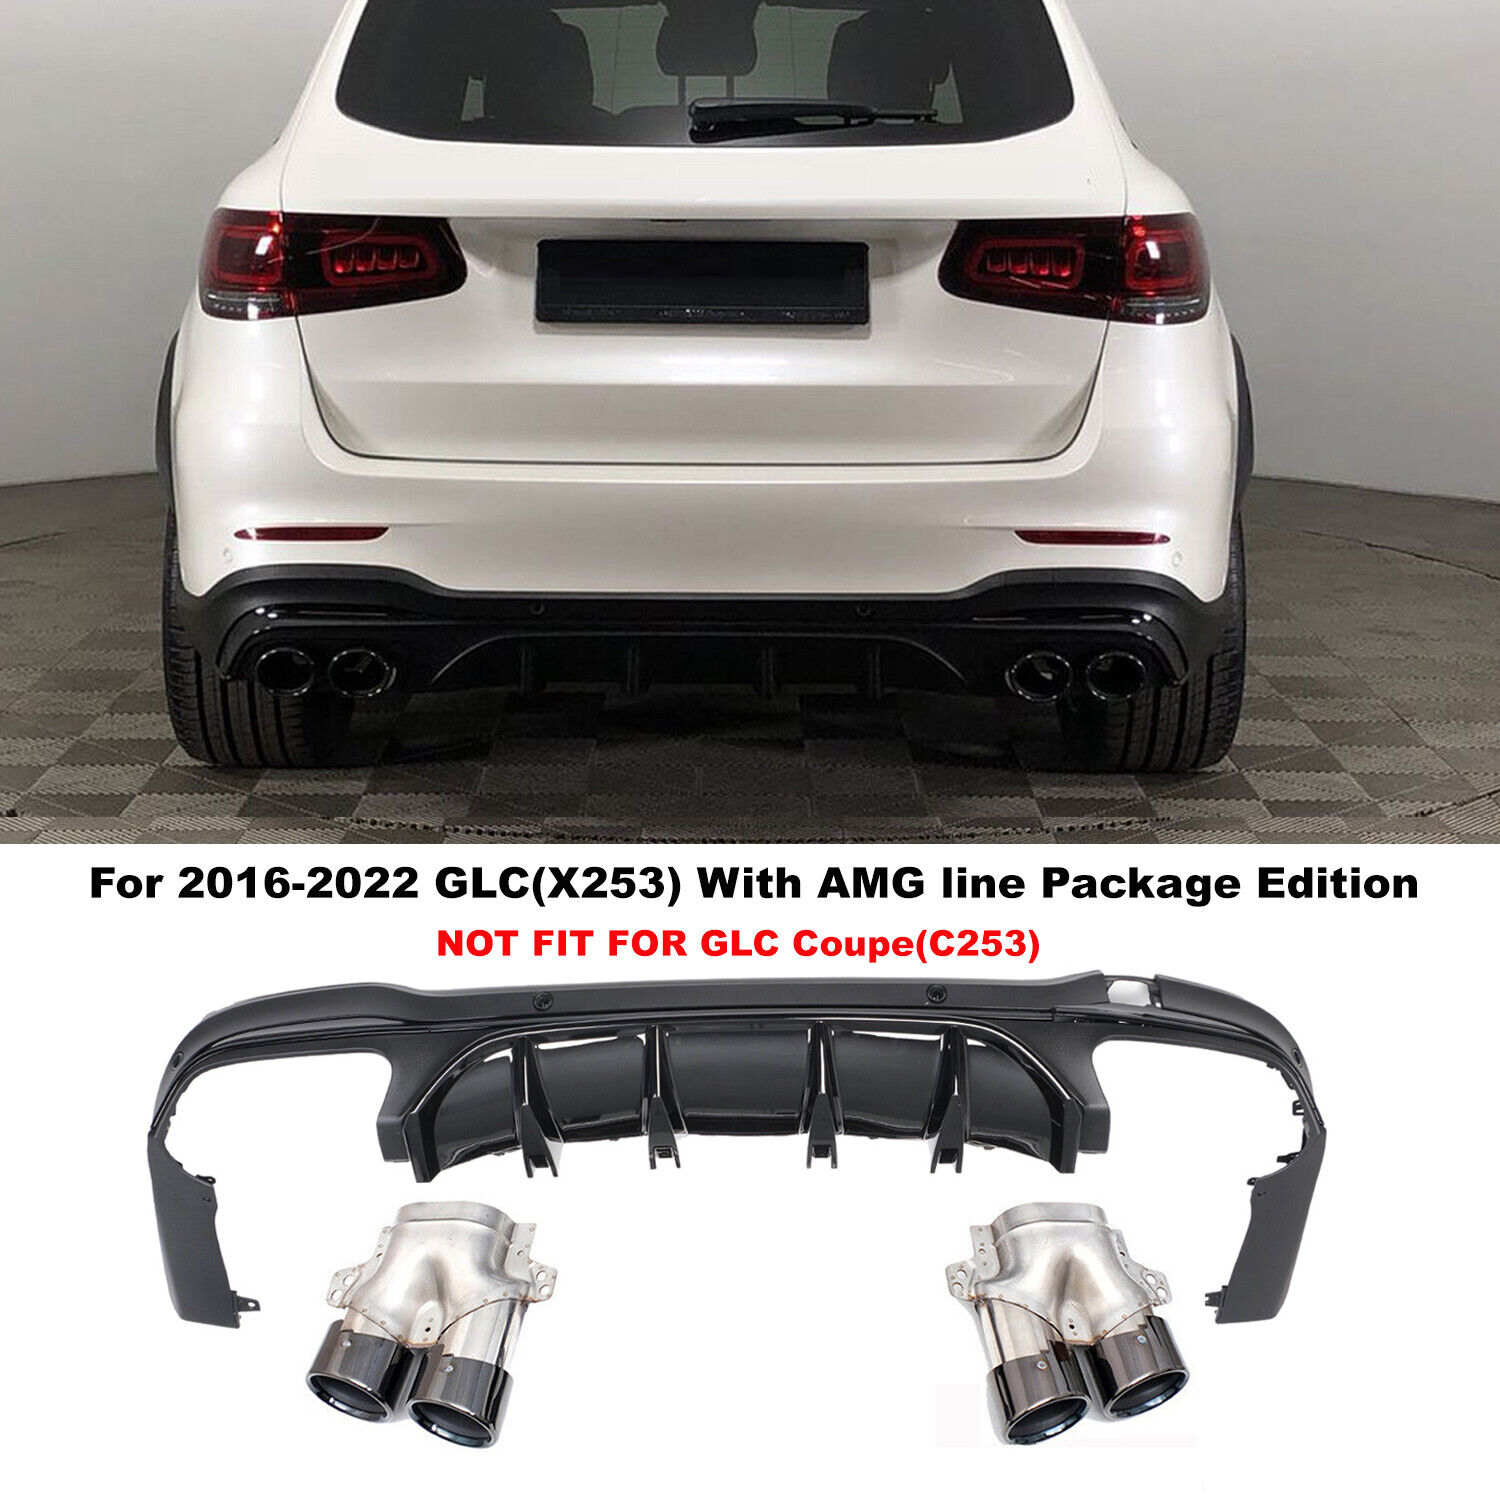 For Mercedes-Benz 2016-2022 GLC X253 Rear Bumper Diffuser W/ 4 Exhaust Holes